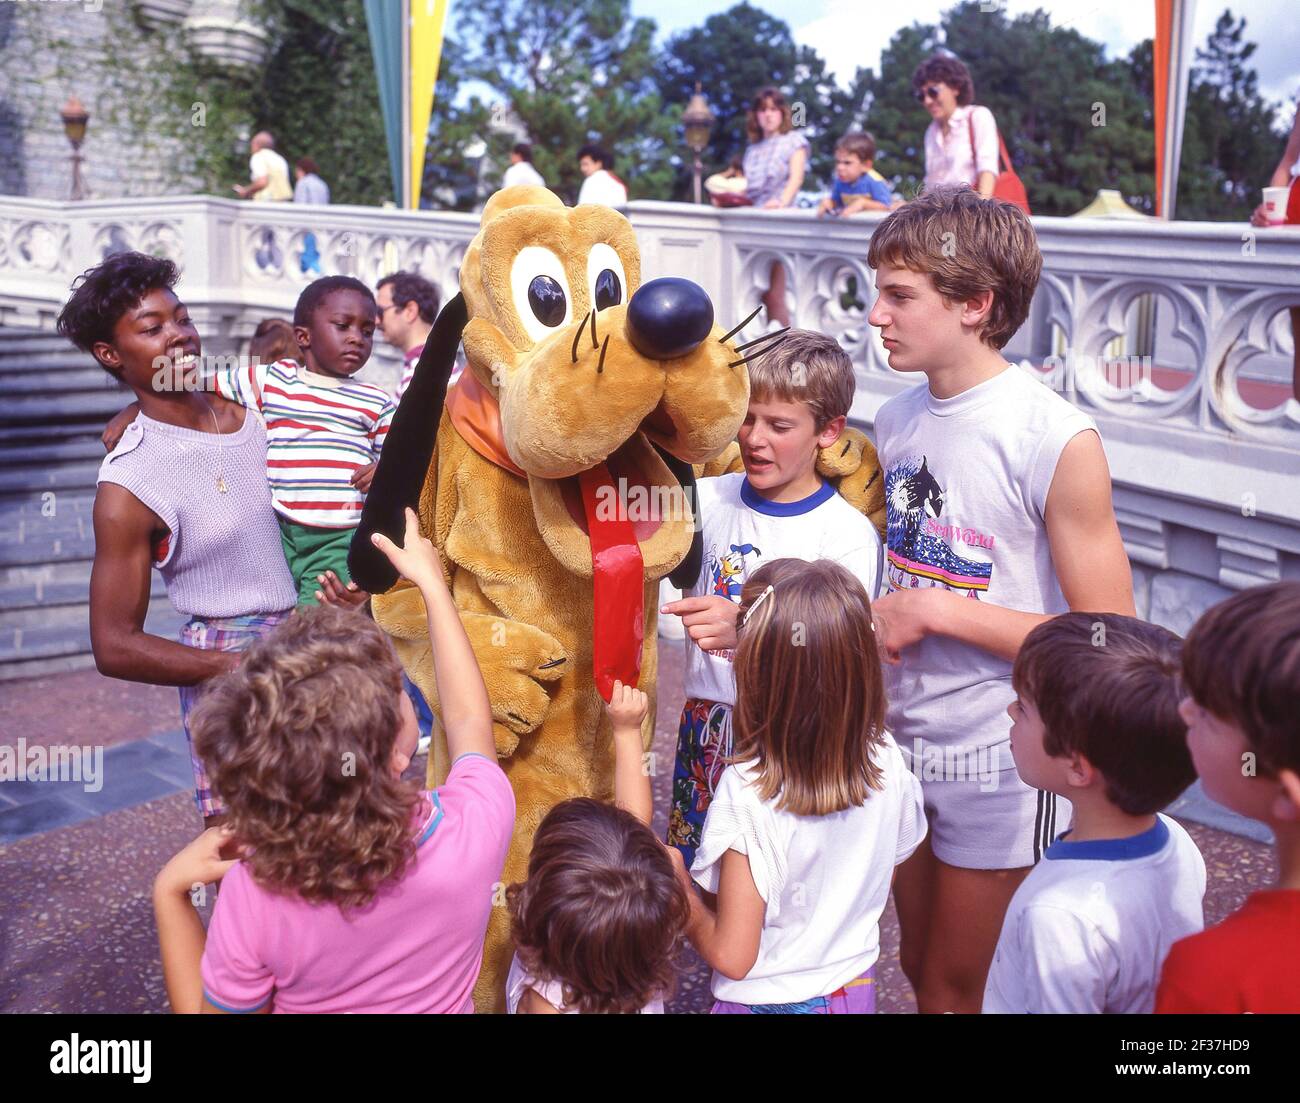 Kleine Kinder mit Pluto-Charakter, Fantasyland, Disneyland, Anaheim, Kalifornien, Vereinigte Staaten von Amerika Stockfoto